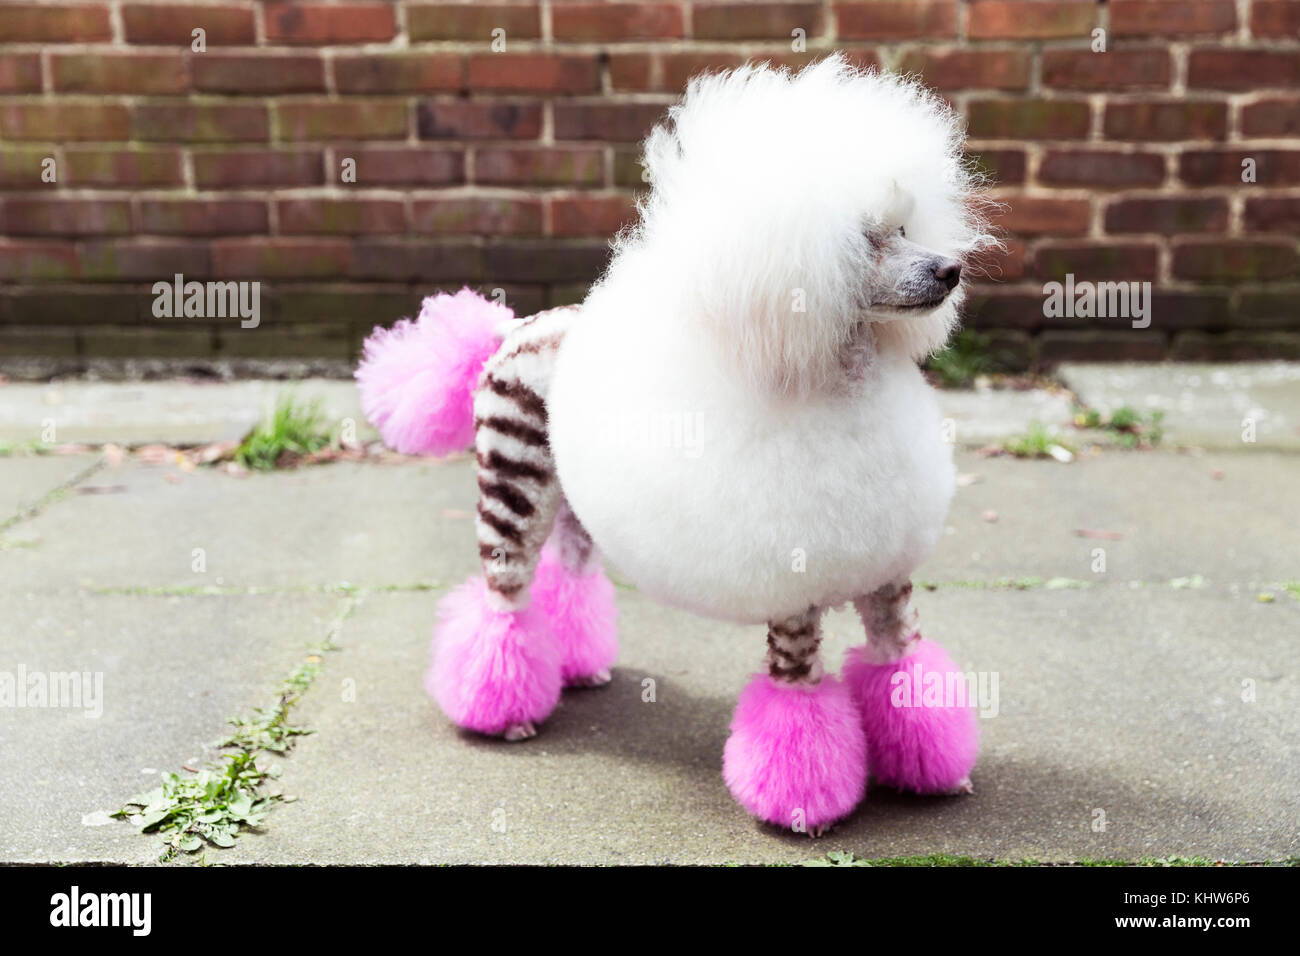 Tier Portrait von präparierten Hund mit gefärbtem Fell rasiert, suchen  Stockfotografie - Alamy